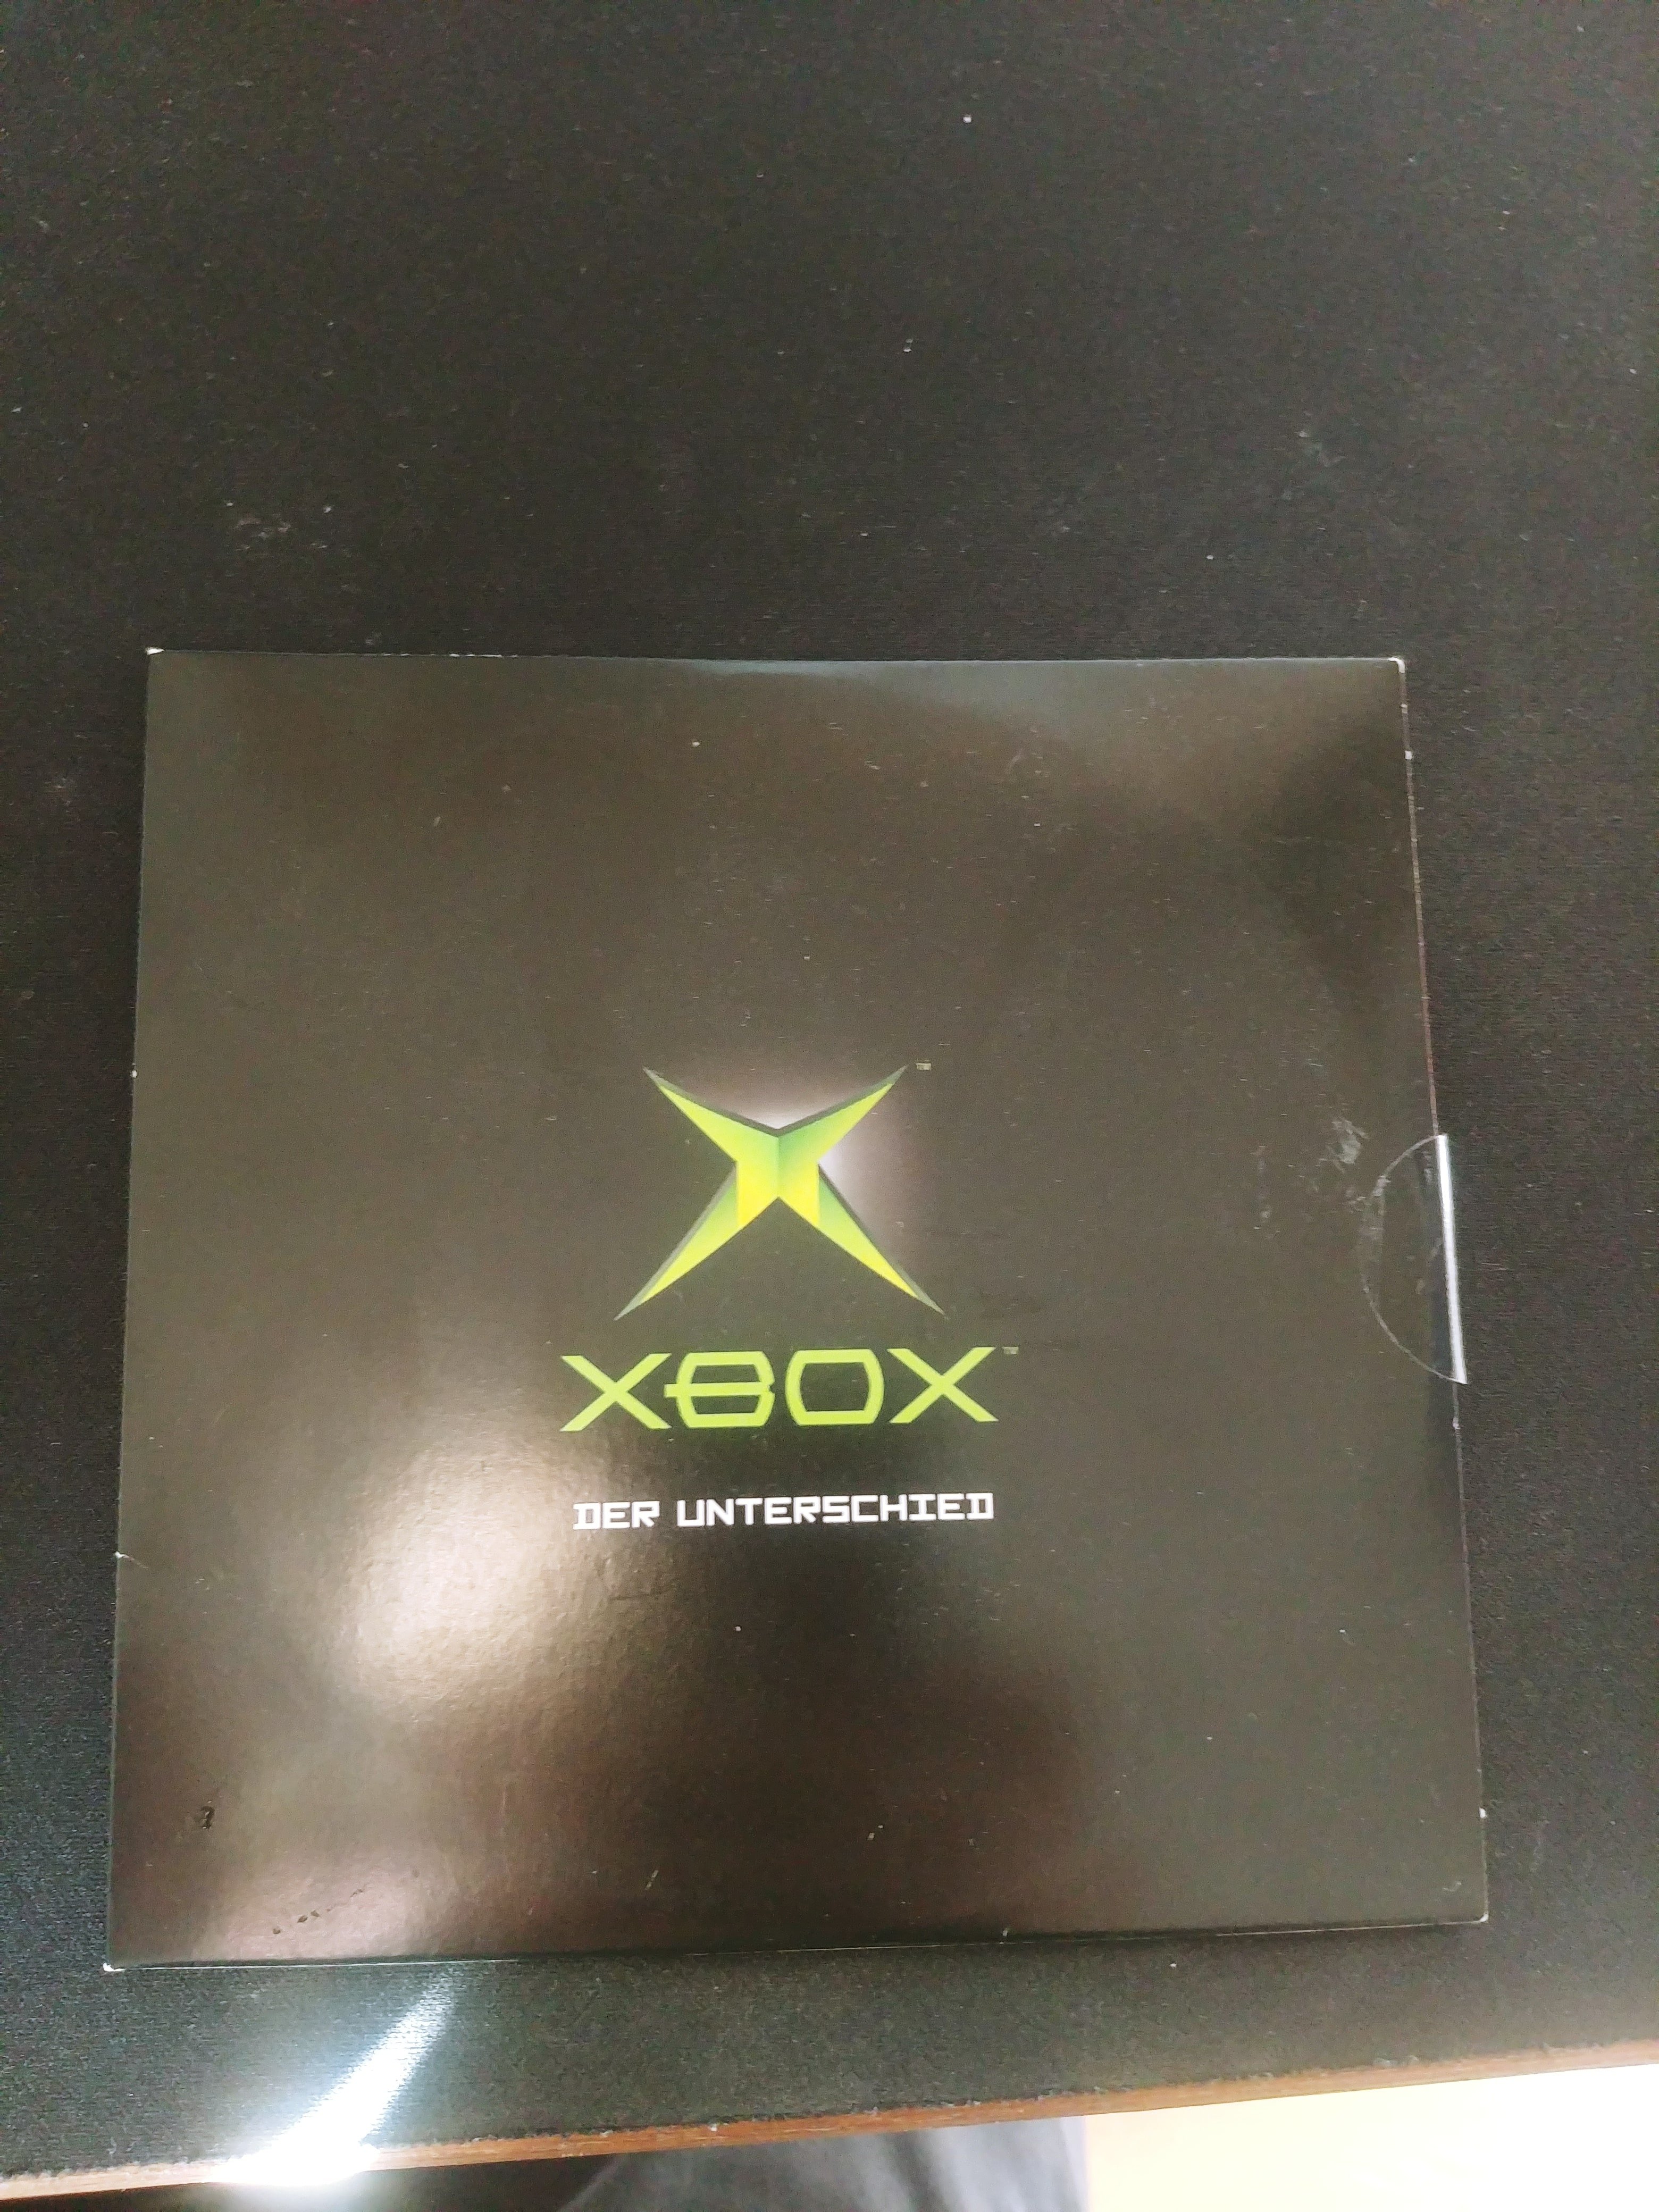 Found Promo-Dvd, Rare? - Rare and Uncommon Xbox Software - OGXbox.com